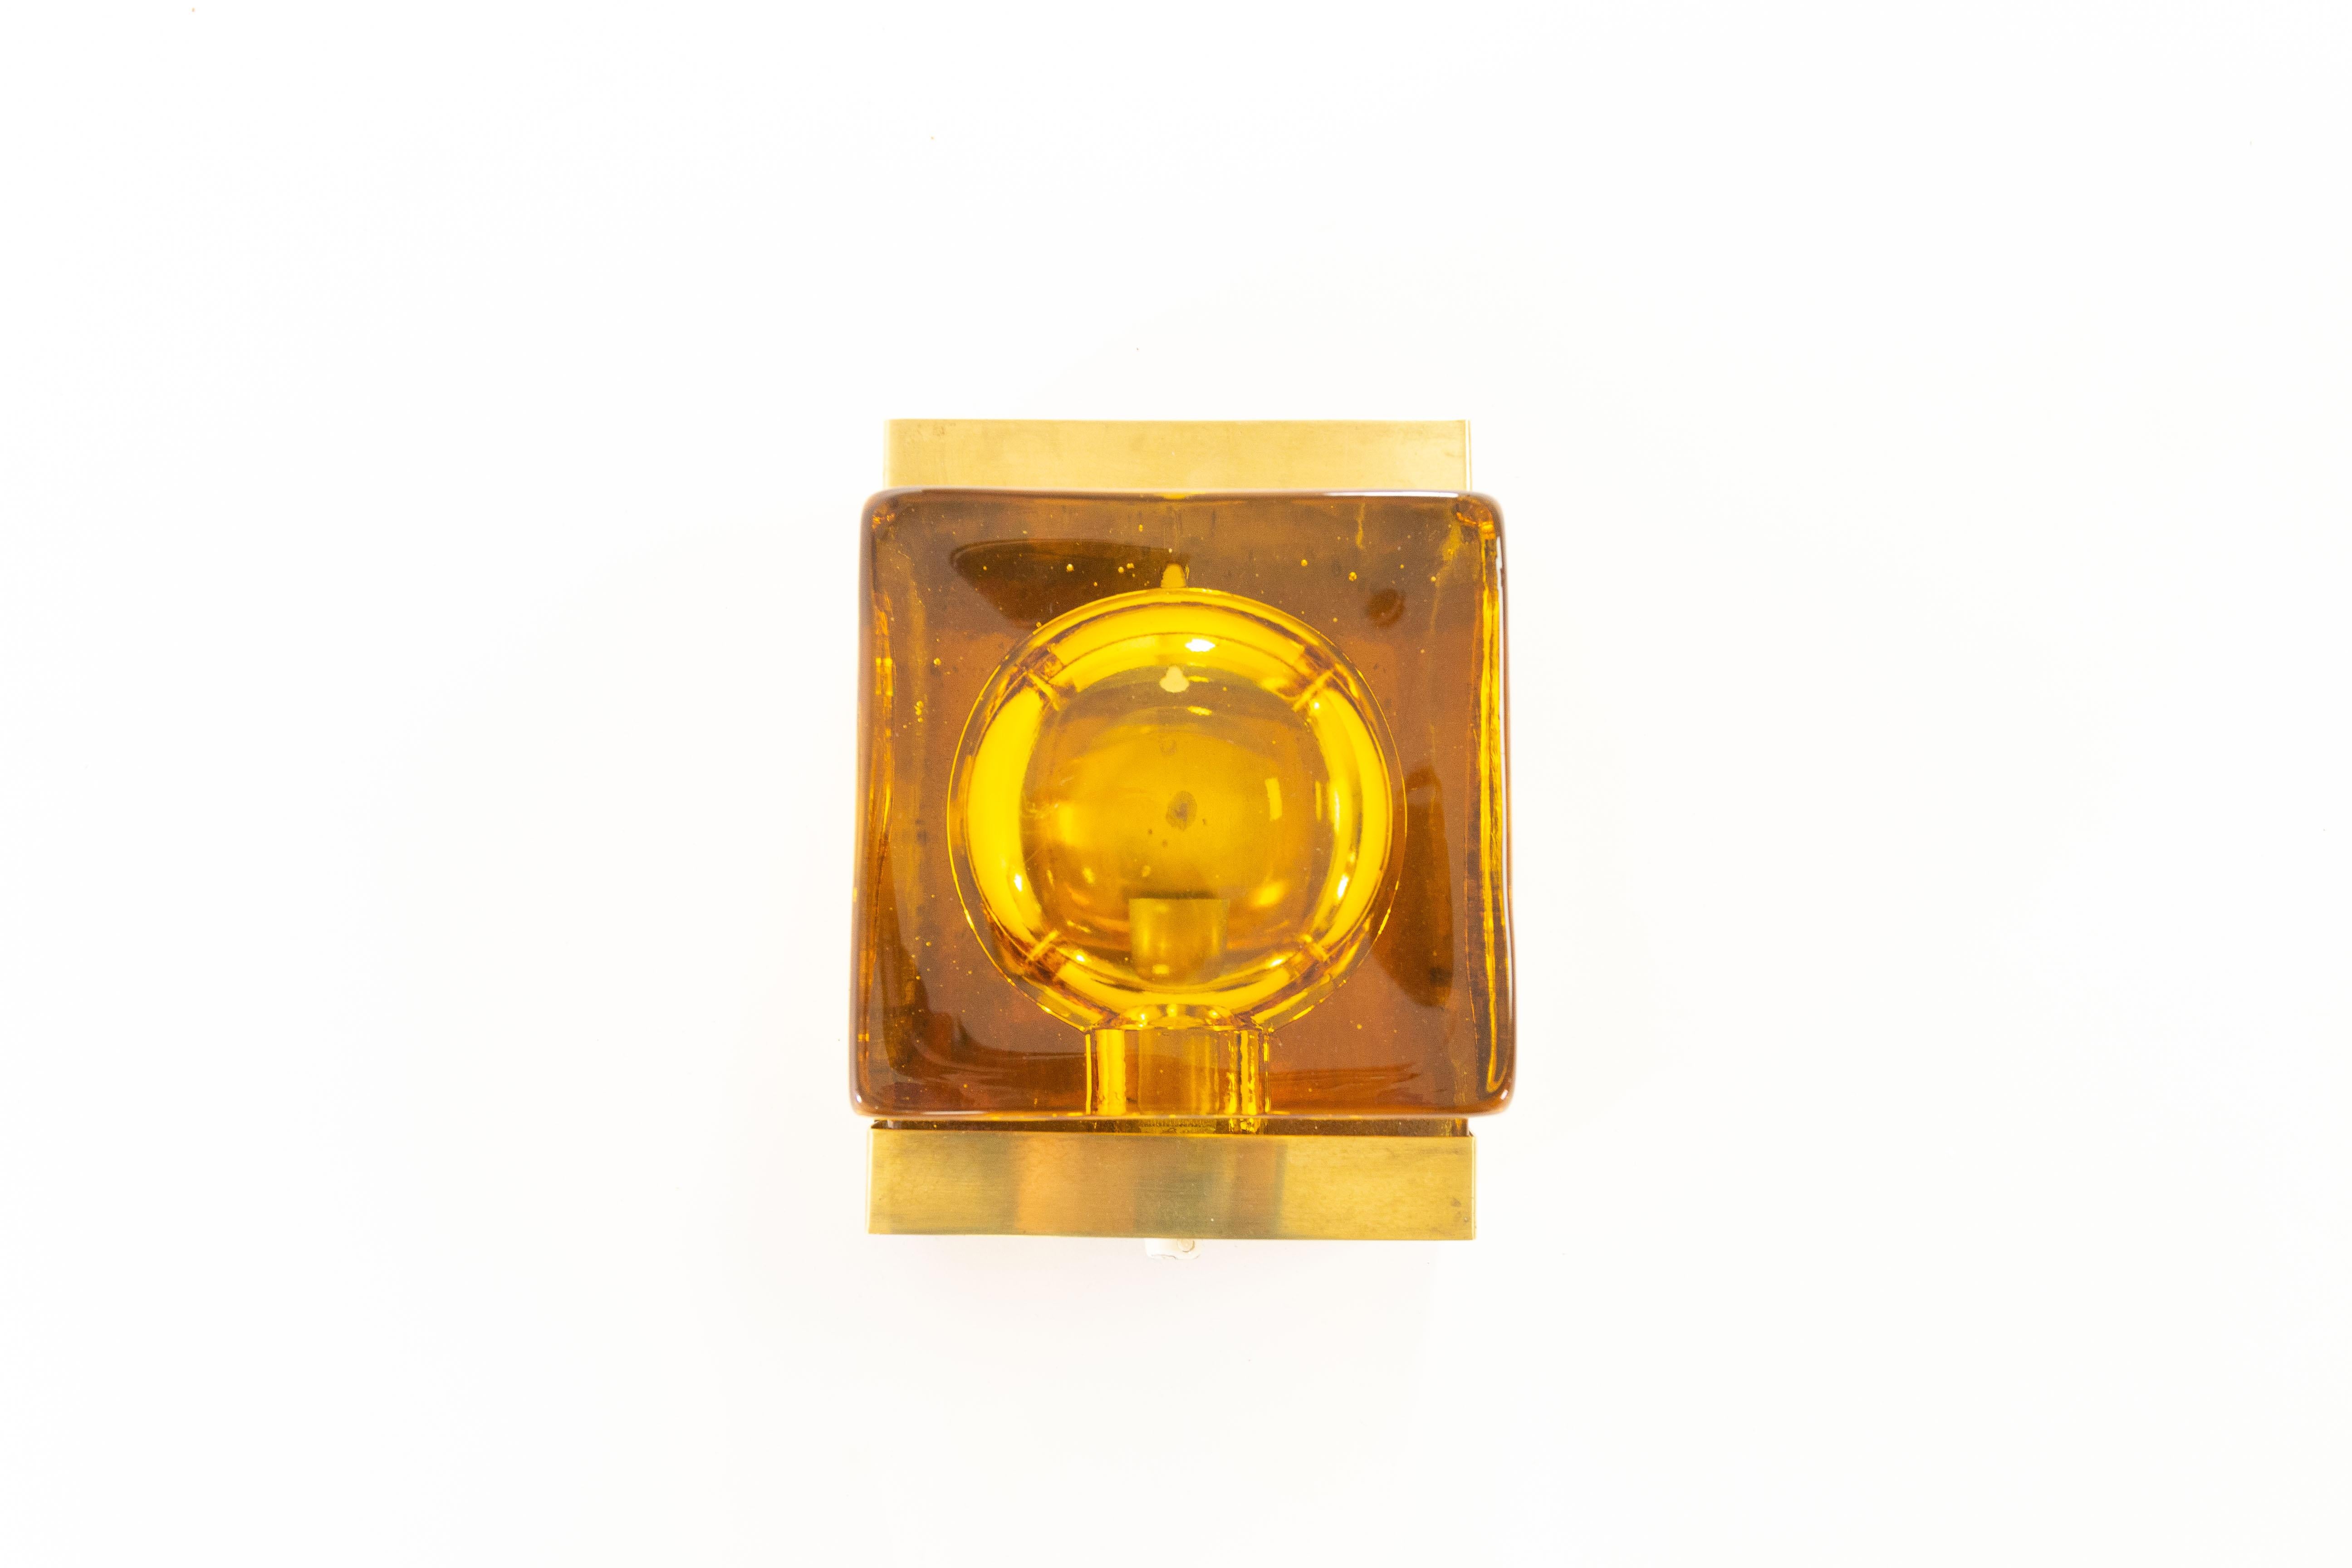 Rara lampada da parete Maritim Lampet di colore ambrato, prodotta dal produttore danese di illuminazione Vitrika negli anni Settanta.

La lampada è composta da due parti: un corpo in vetro fatto a mano solido e quindi piuttosto pesante (2,4 kg) e il